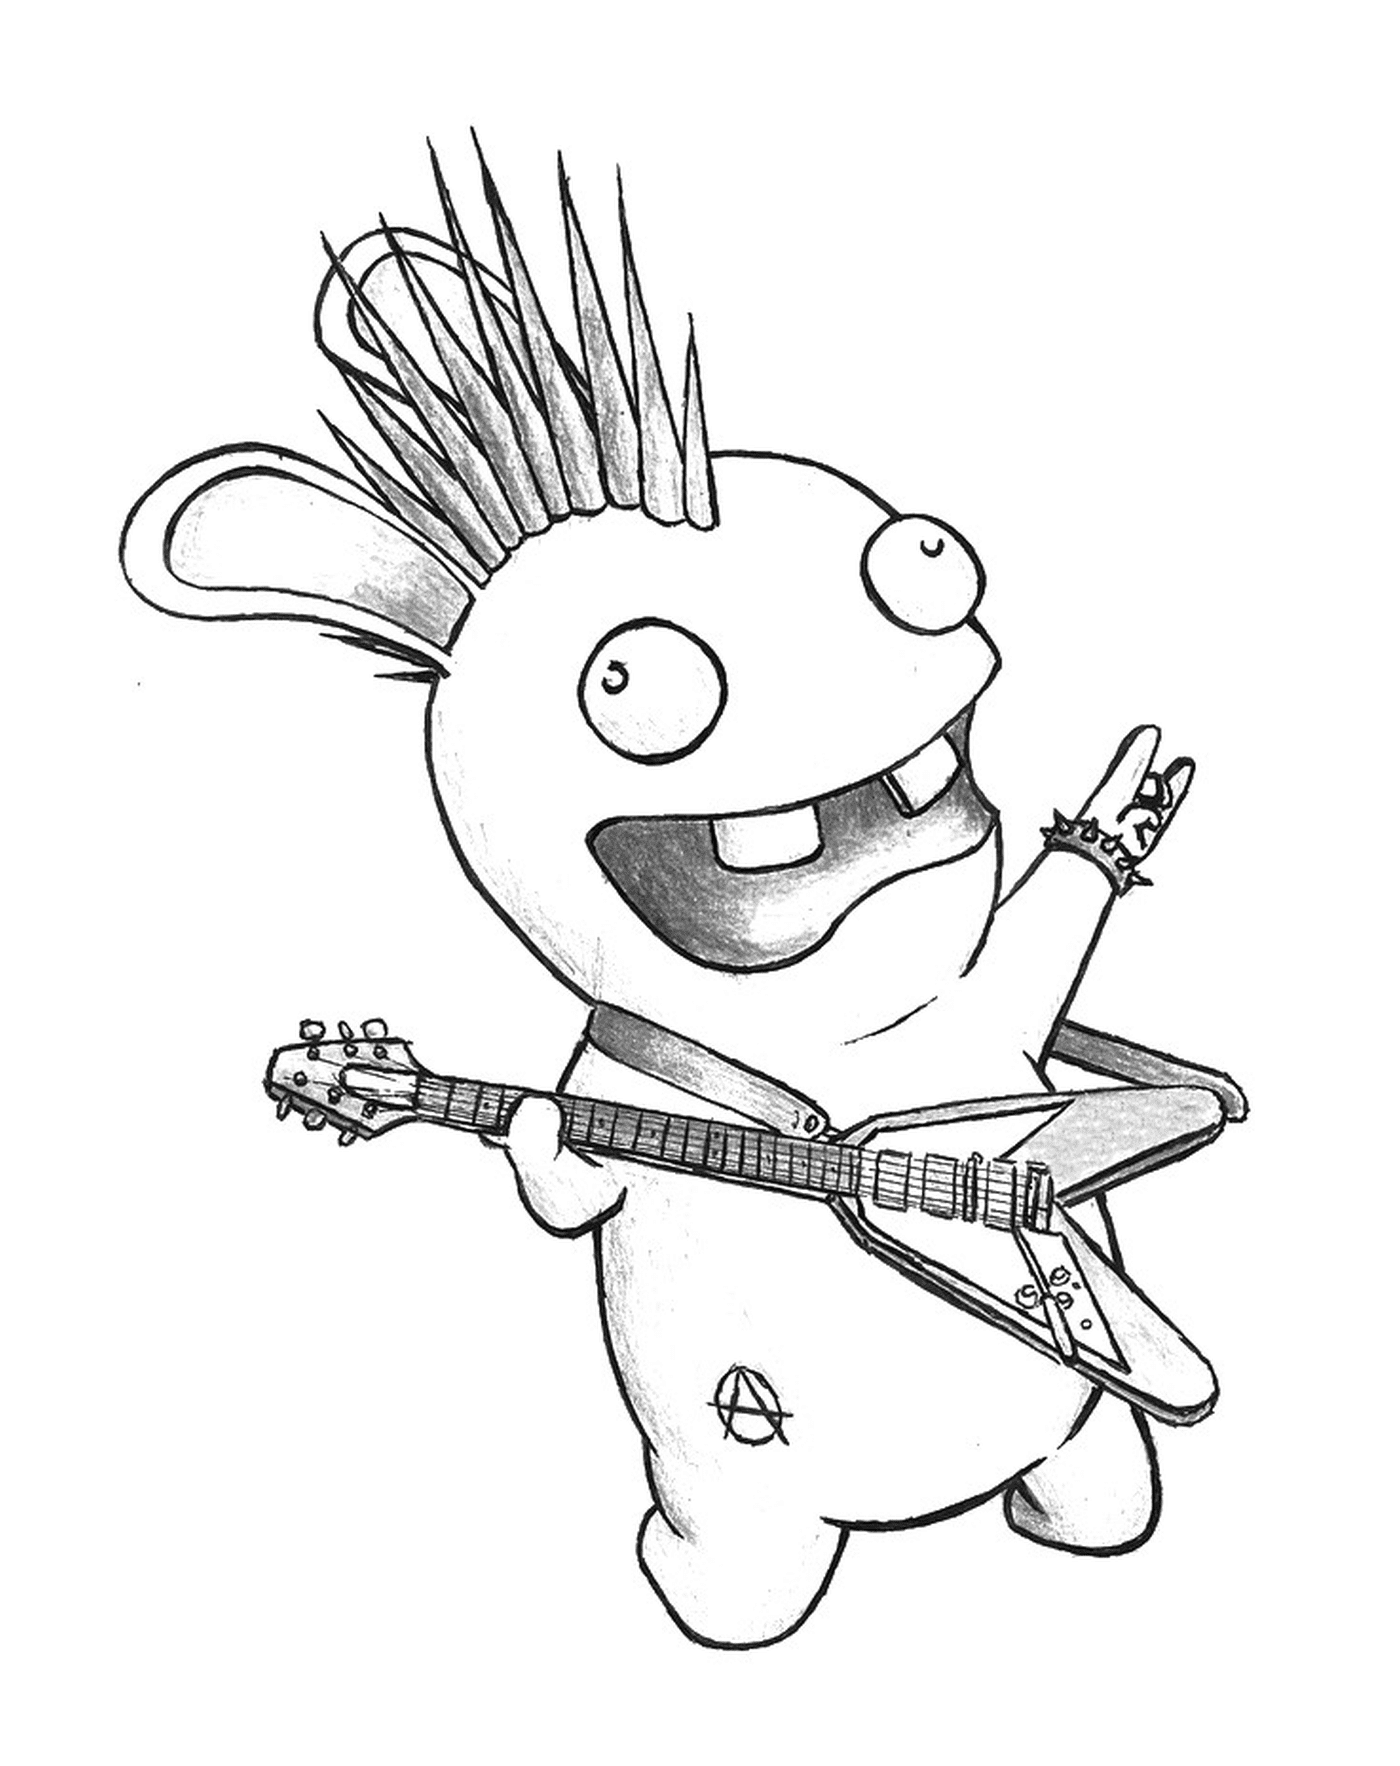  Conejo Cretin estrella de rock 